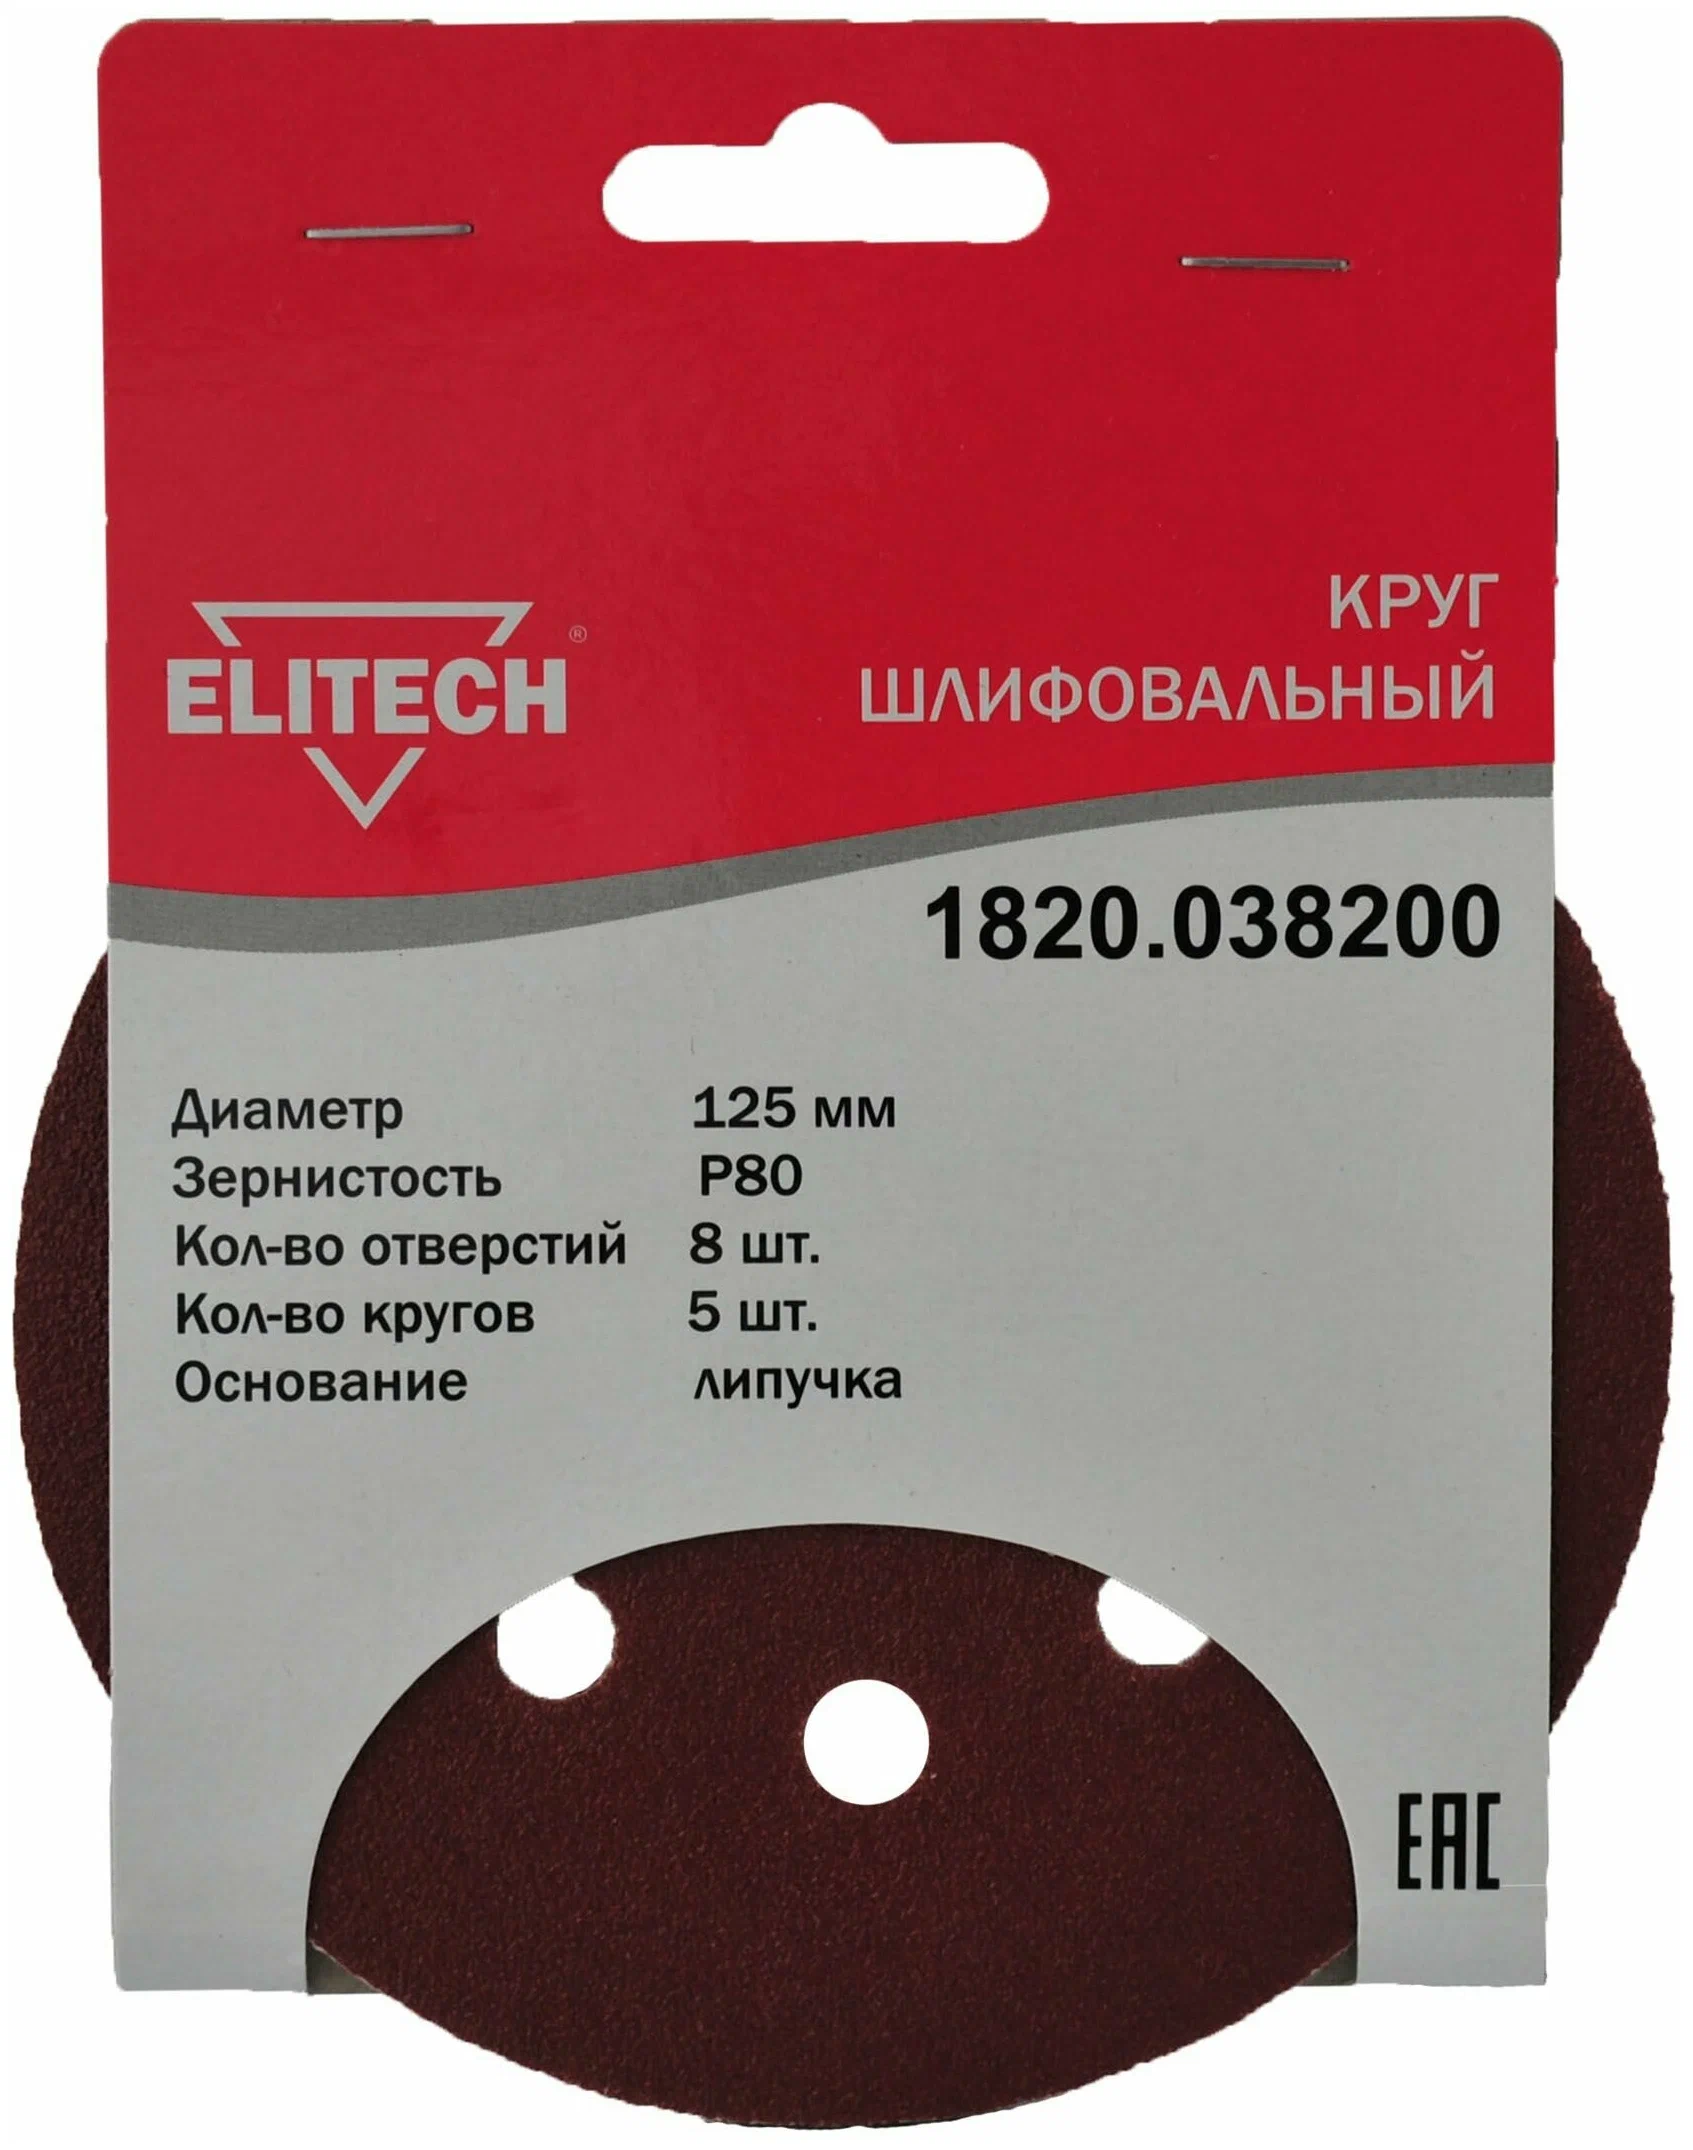 Круг шлифовальный ELITECH 1820.038200 ⌀12.5 см, P80, 8 отверстий, 5 шт., по дереву и металлу (186641)